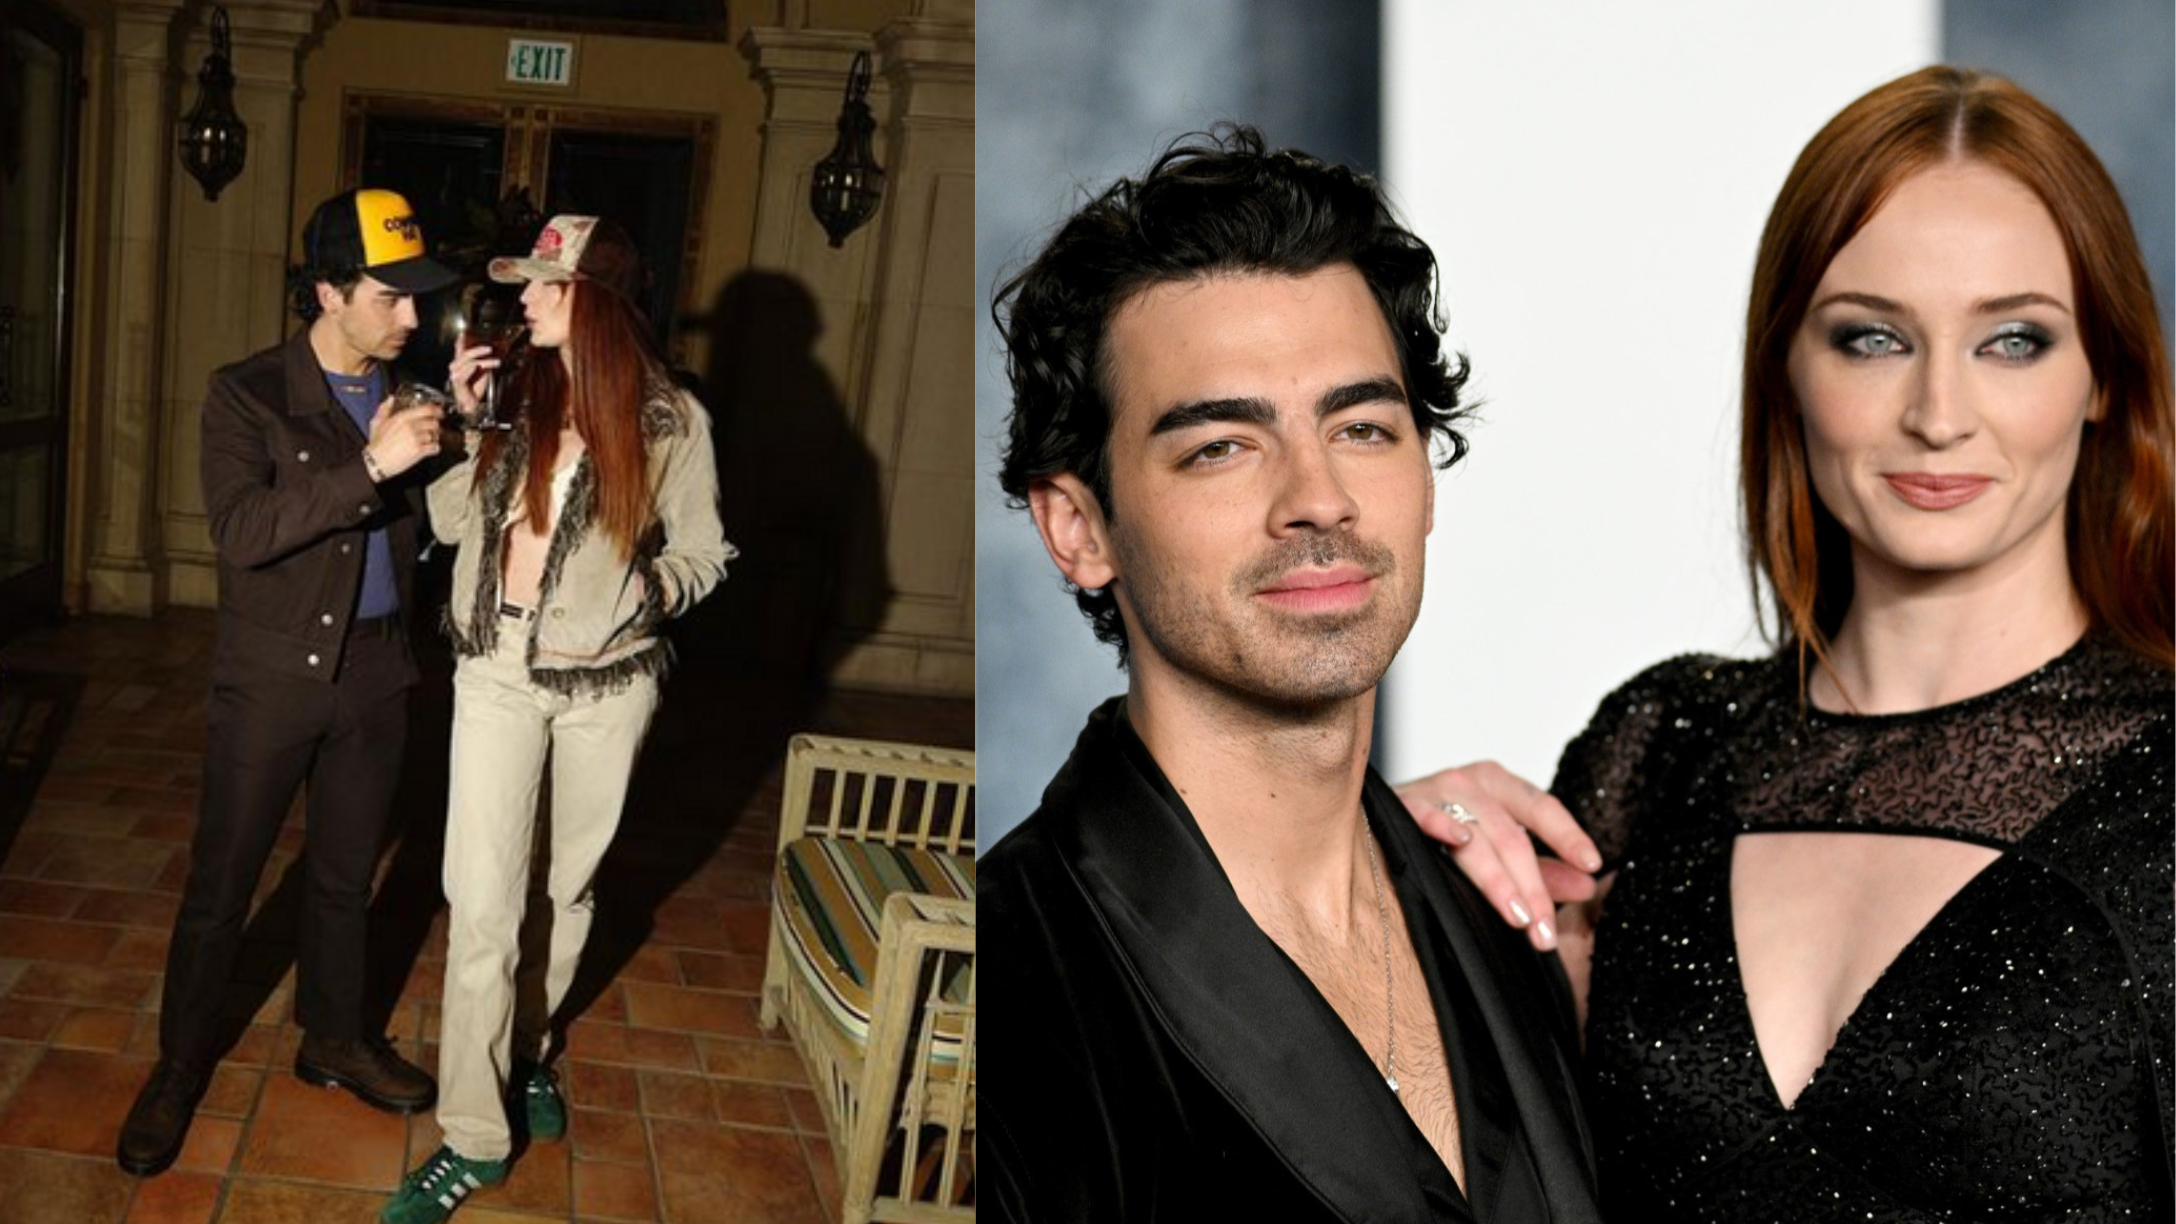 Joe Jonas Wears Wedding Ring Amid Sophie Turner Divorce Reports